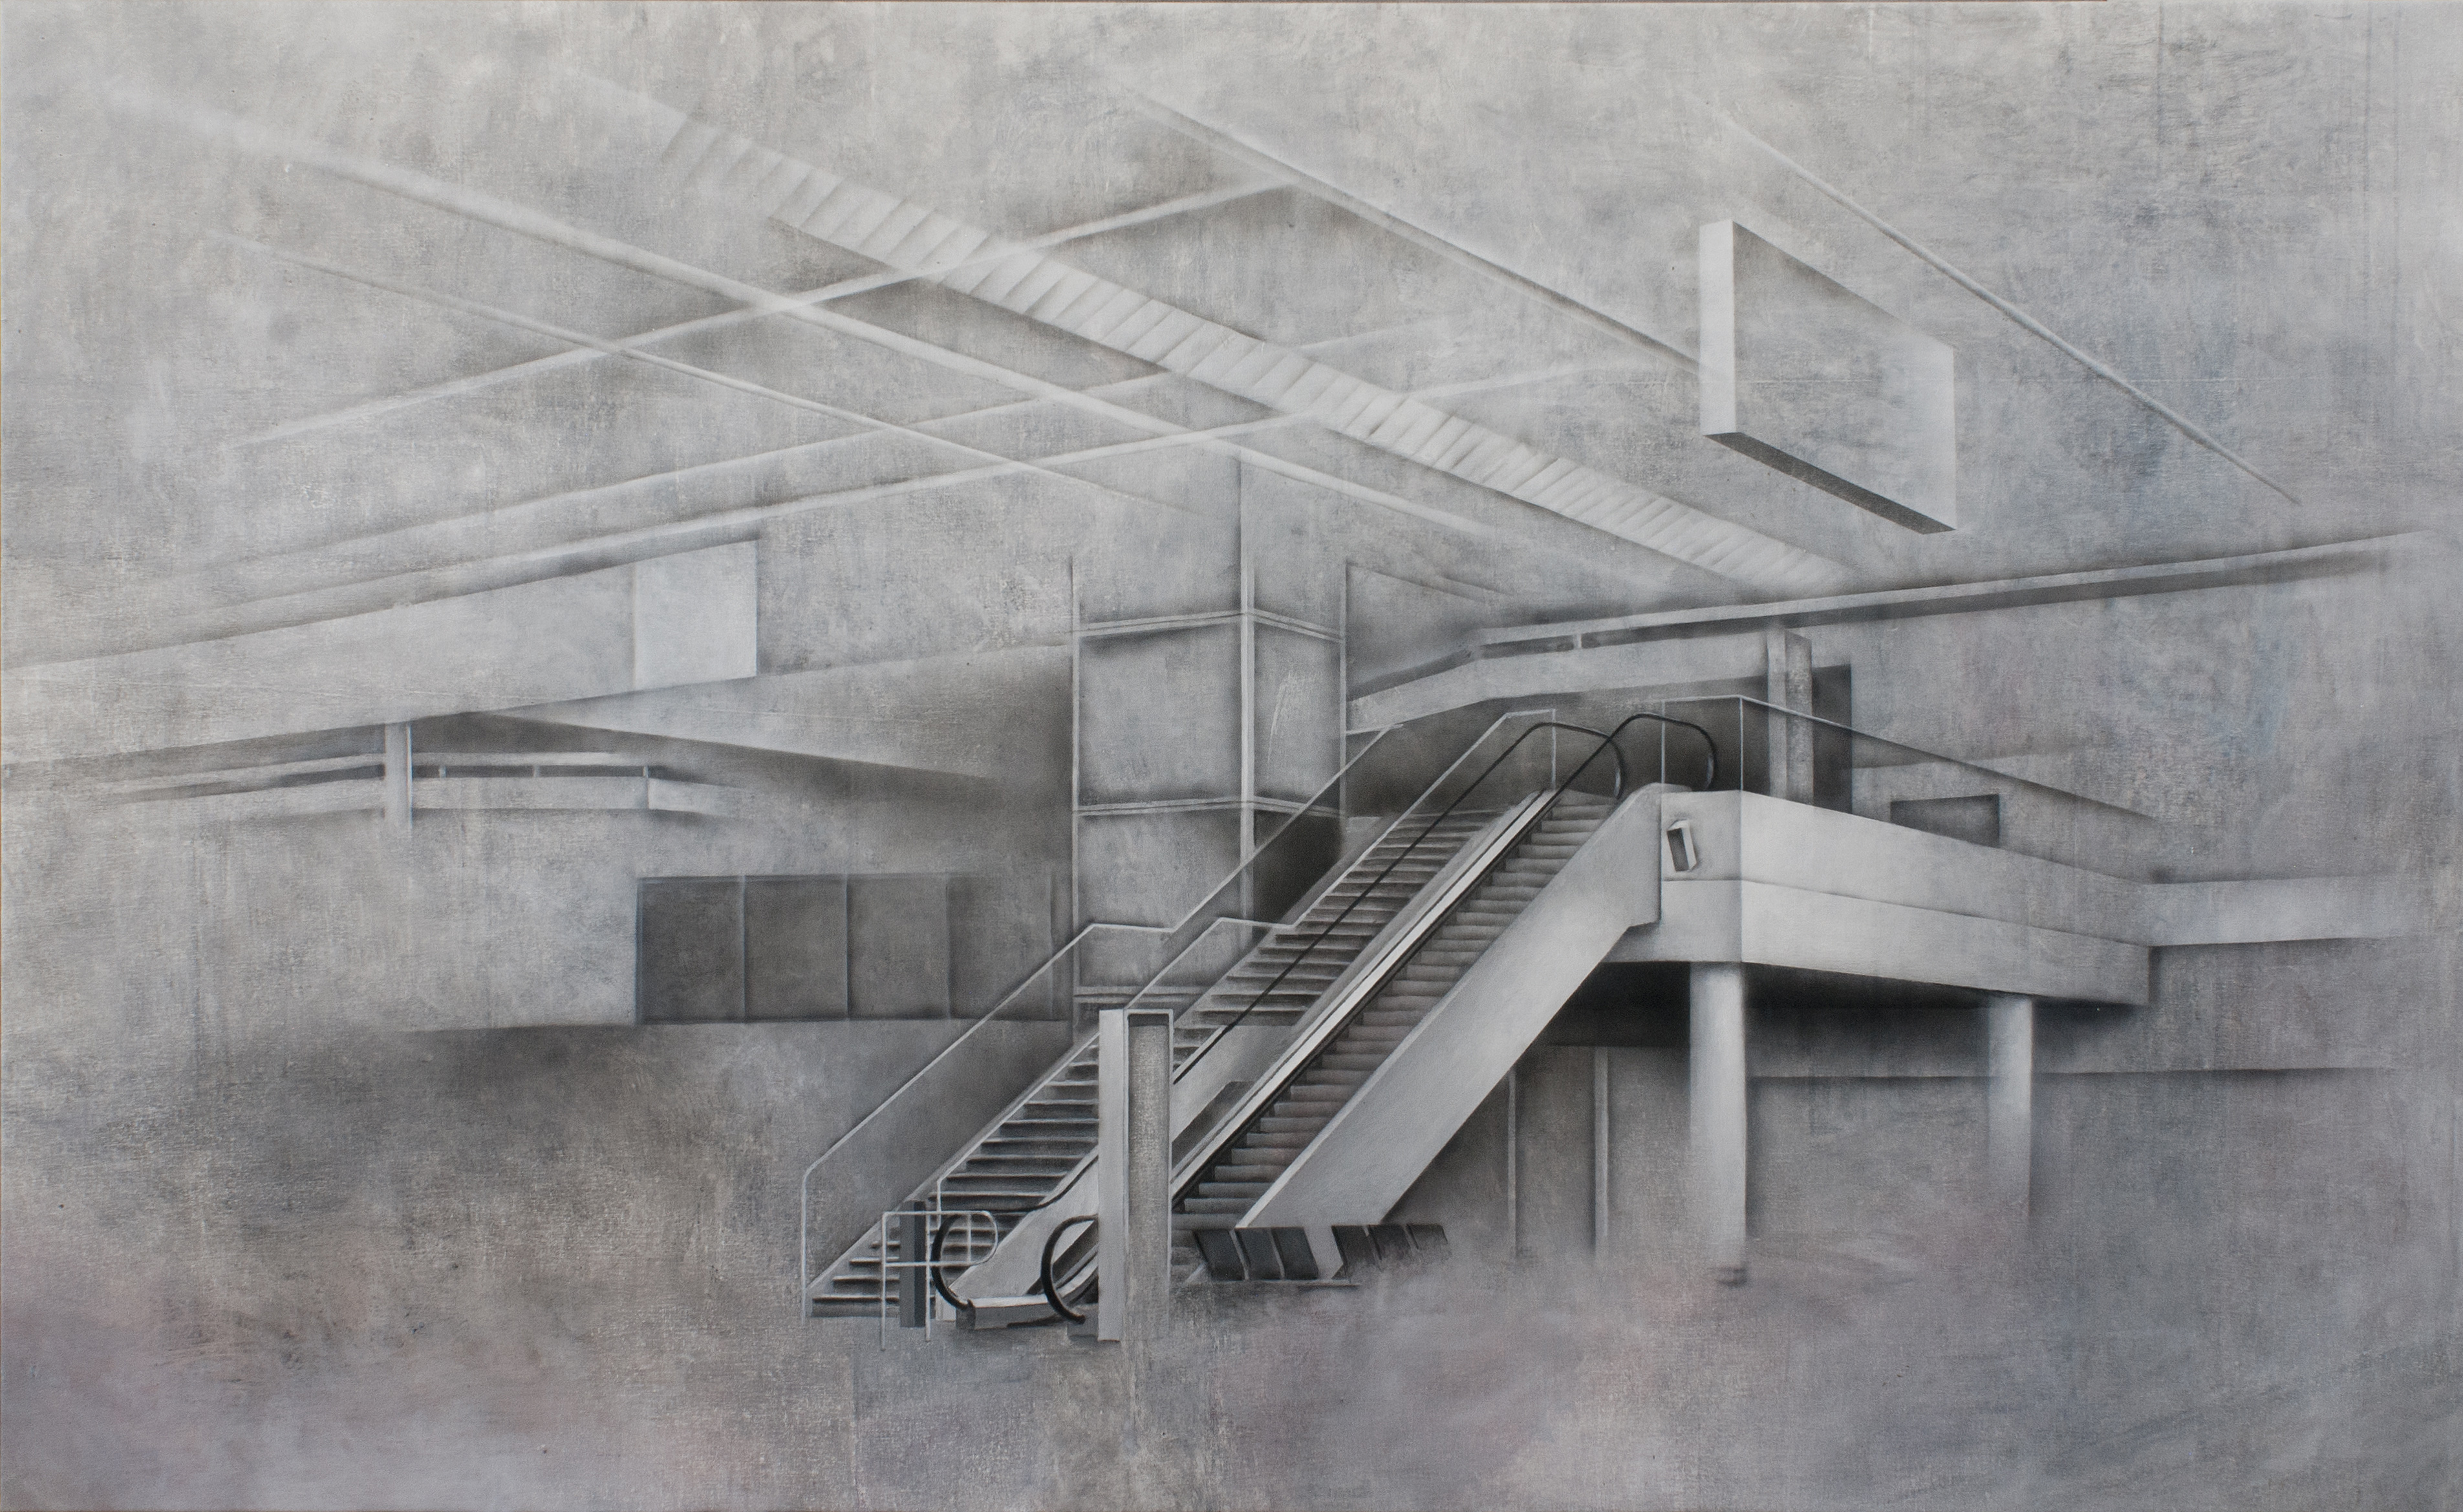 Štruktúra-schody, 120x195cm, akryl na plátne, 2015